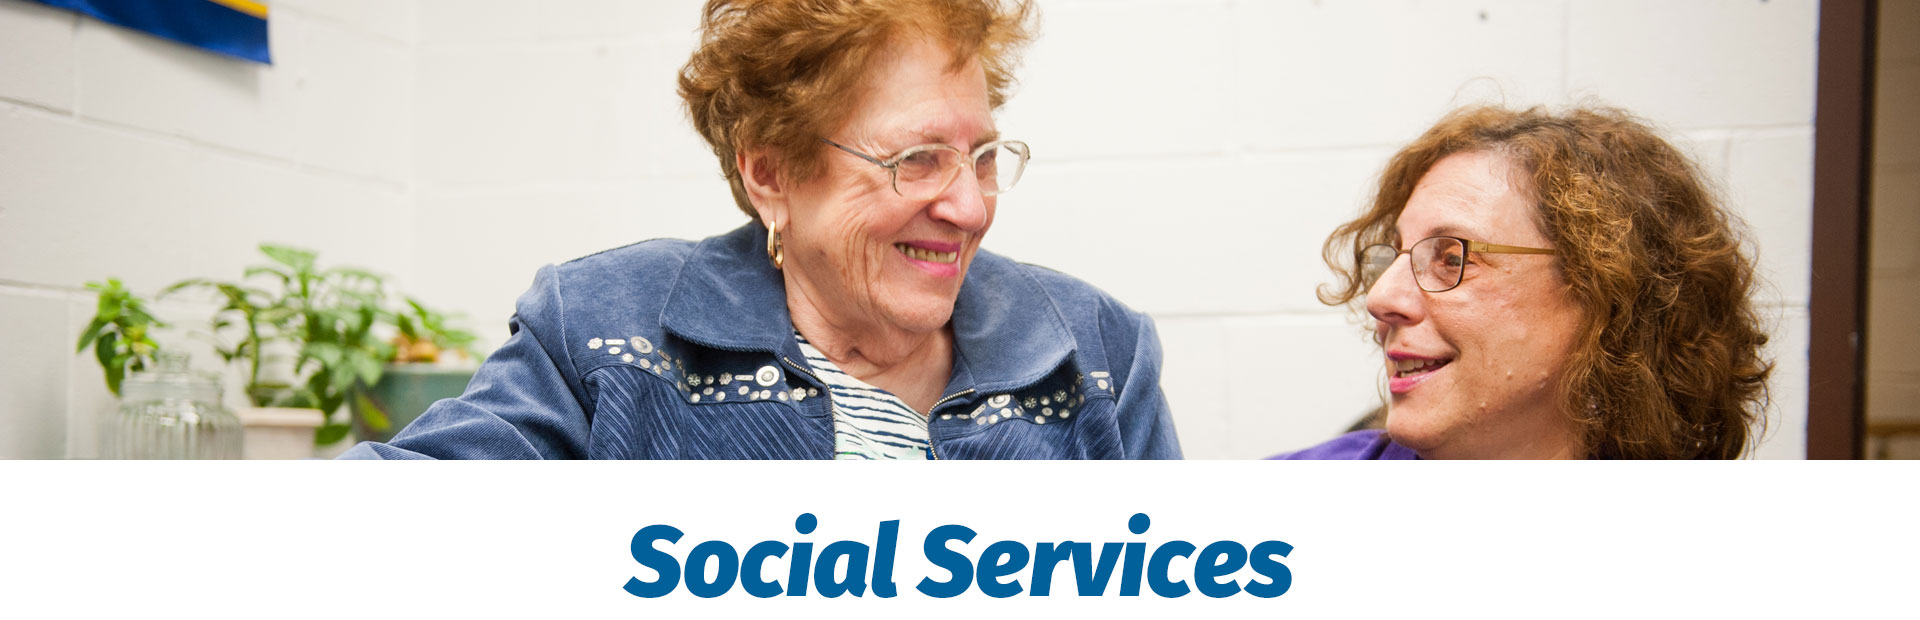 kleinlife social services, social services activities for seniors, social services for senior community